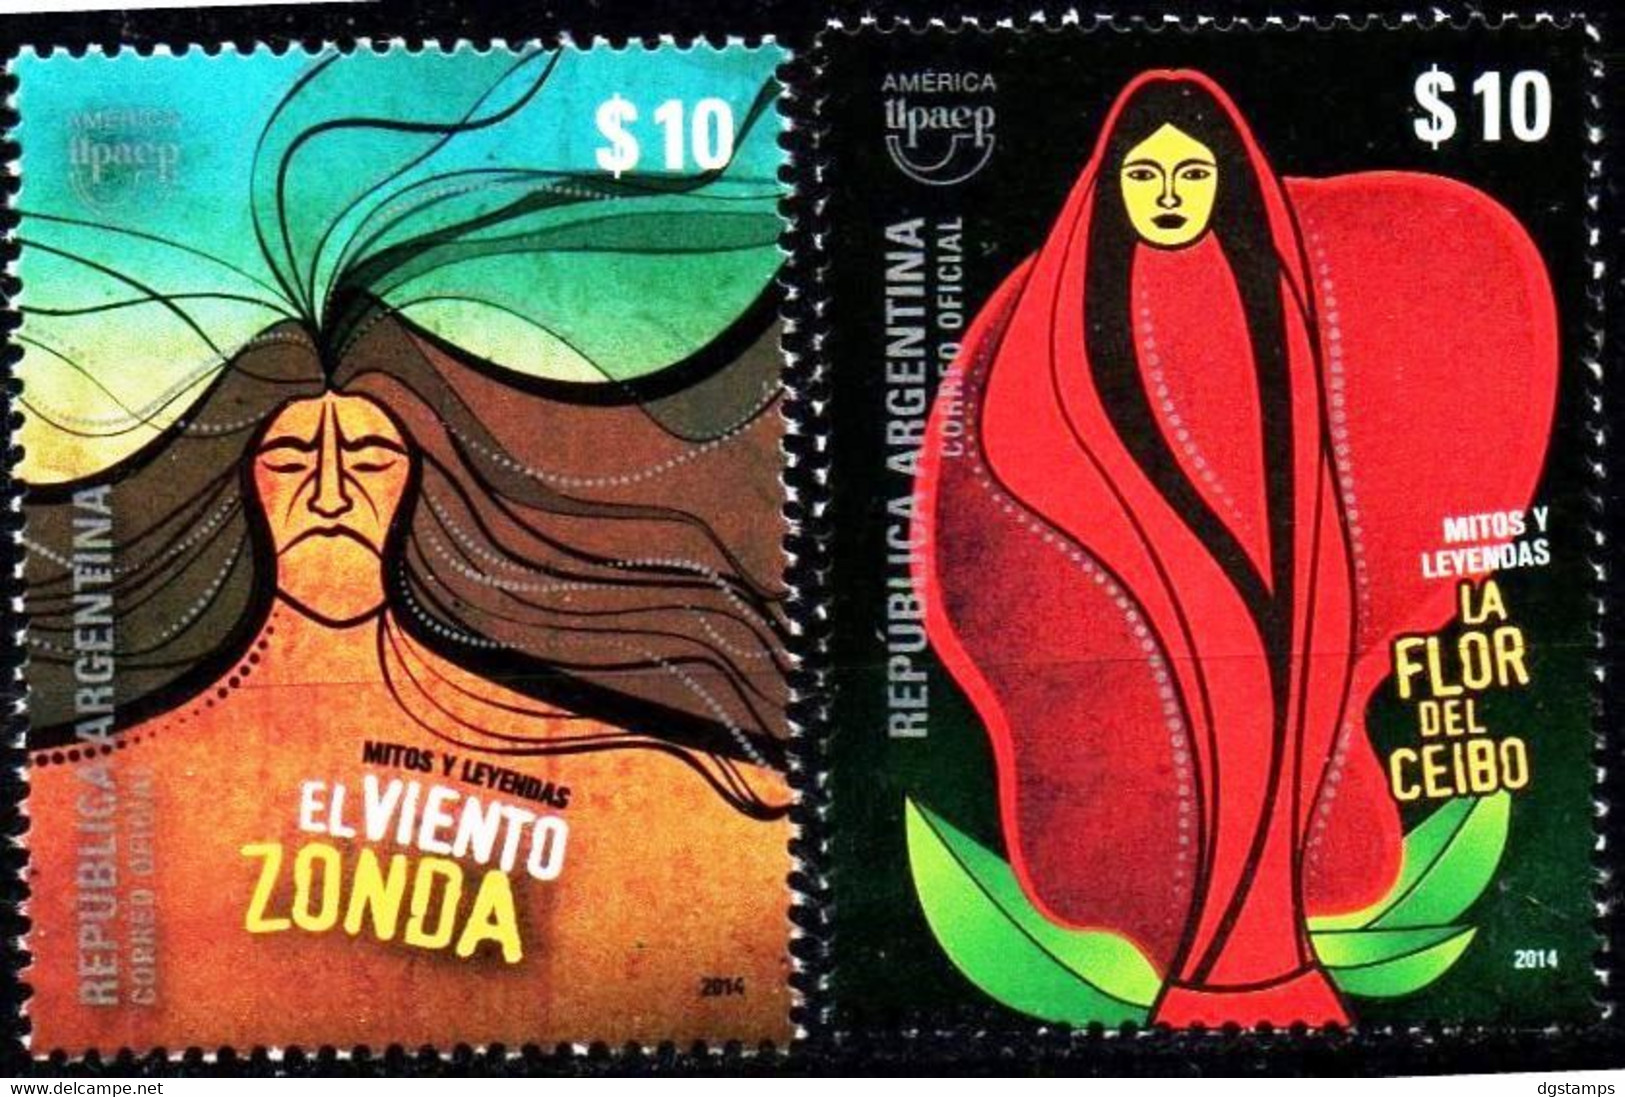 Argentina 2014 ** Upaep 2012 Mitos Y Leyendas. See Description. - Unused Stamps